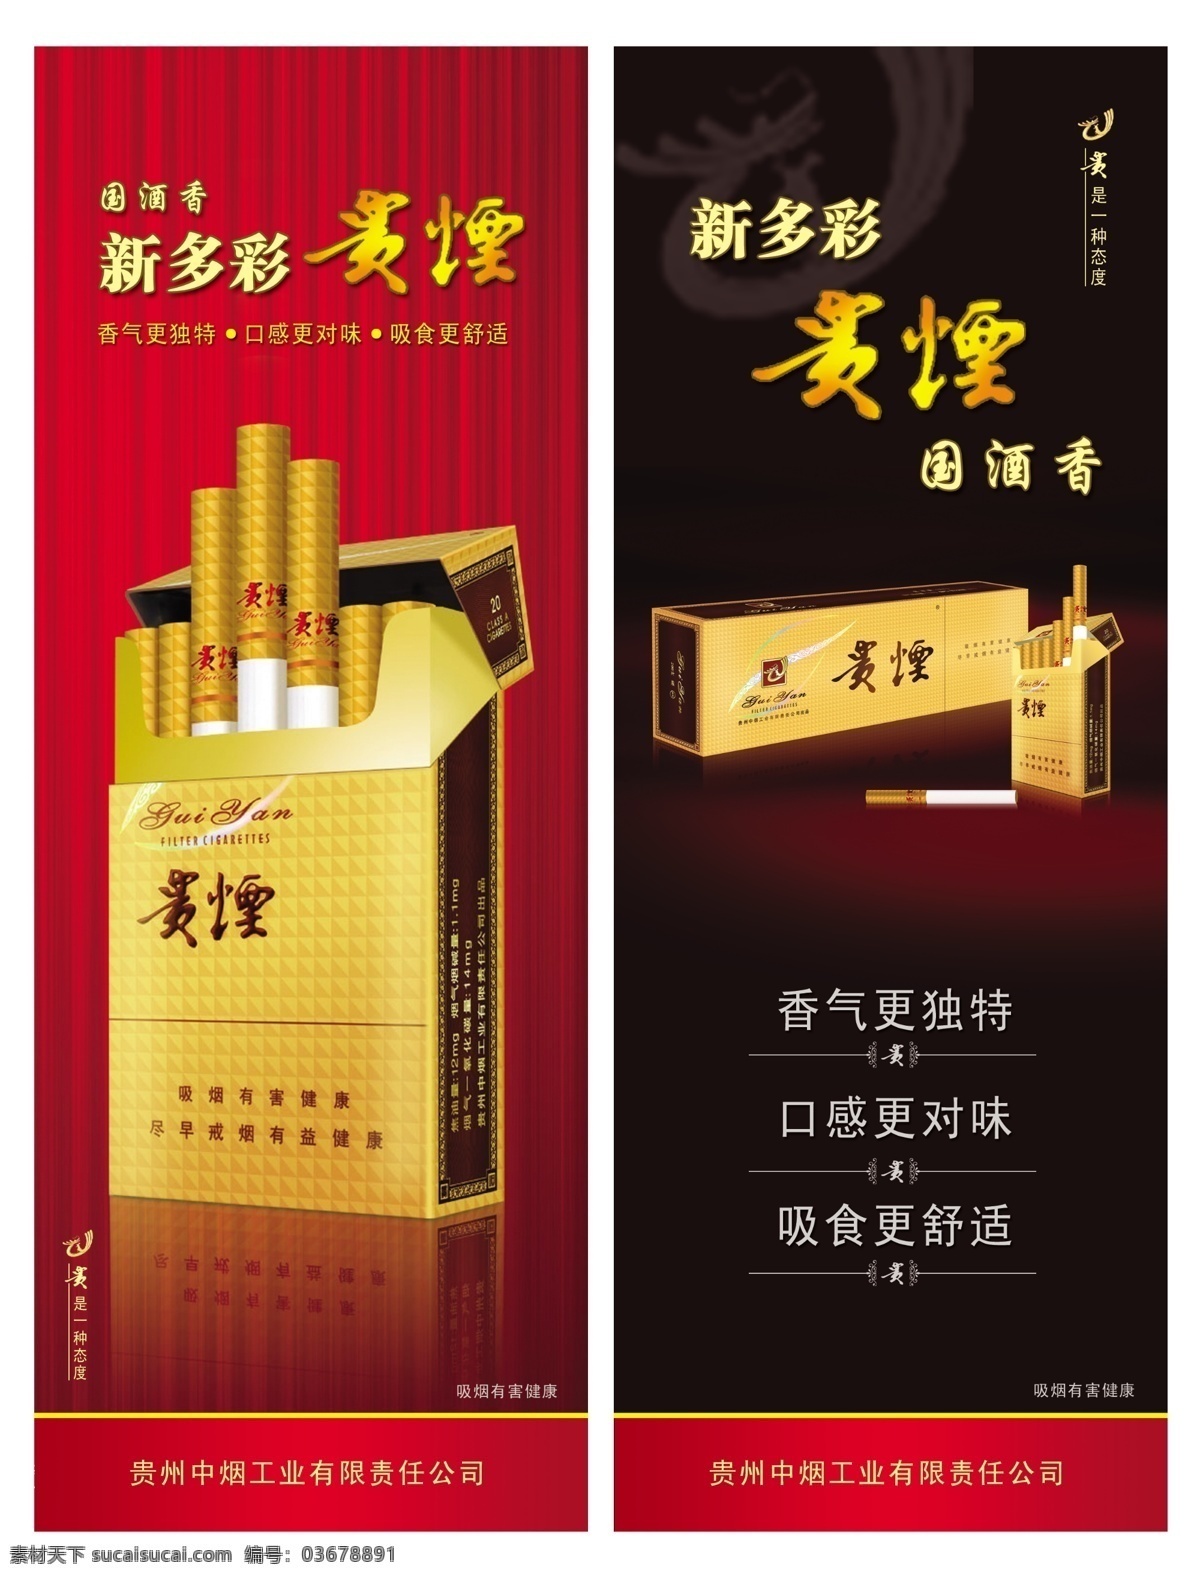 新多彩贵烟 贵州 中 烟 工业 有限责任 公司 吸烟有害健康 国酒香 烟盒 窗帘背景 广告设计模板 源文件